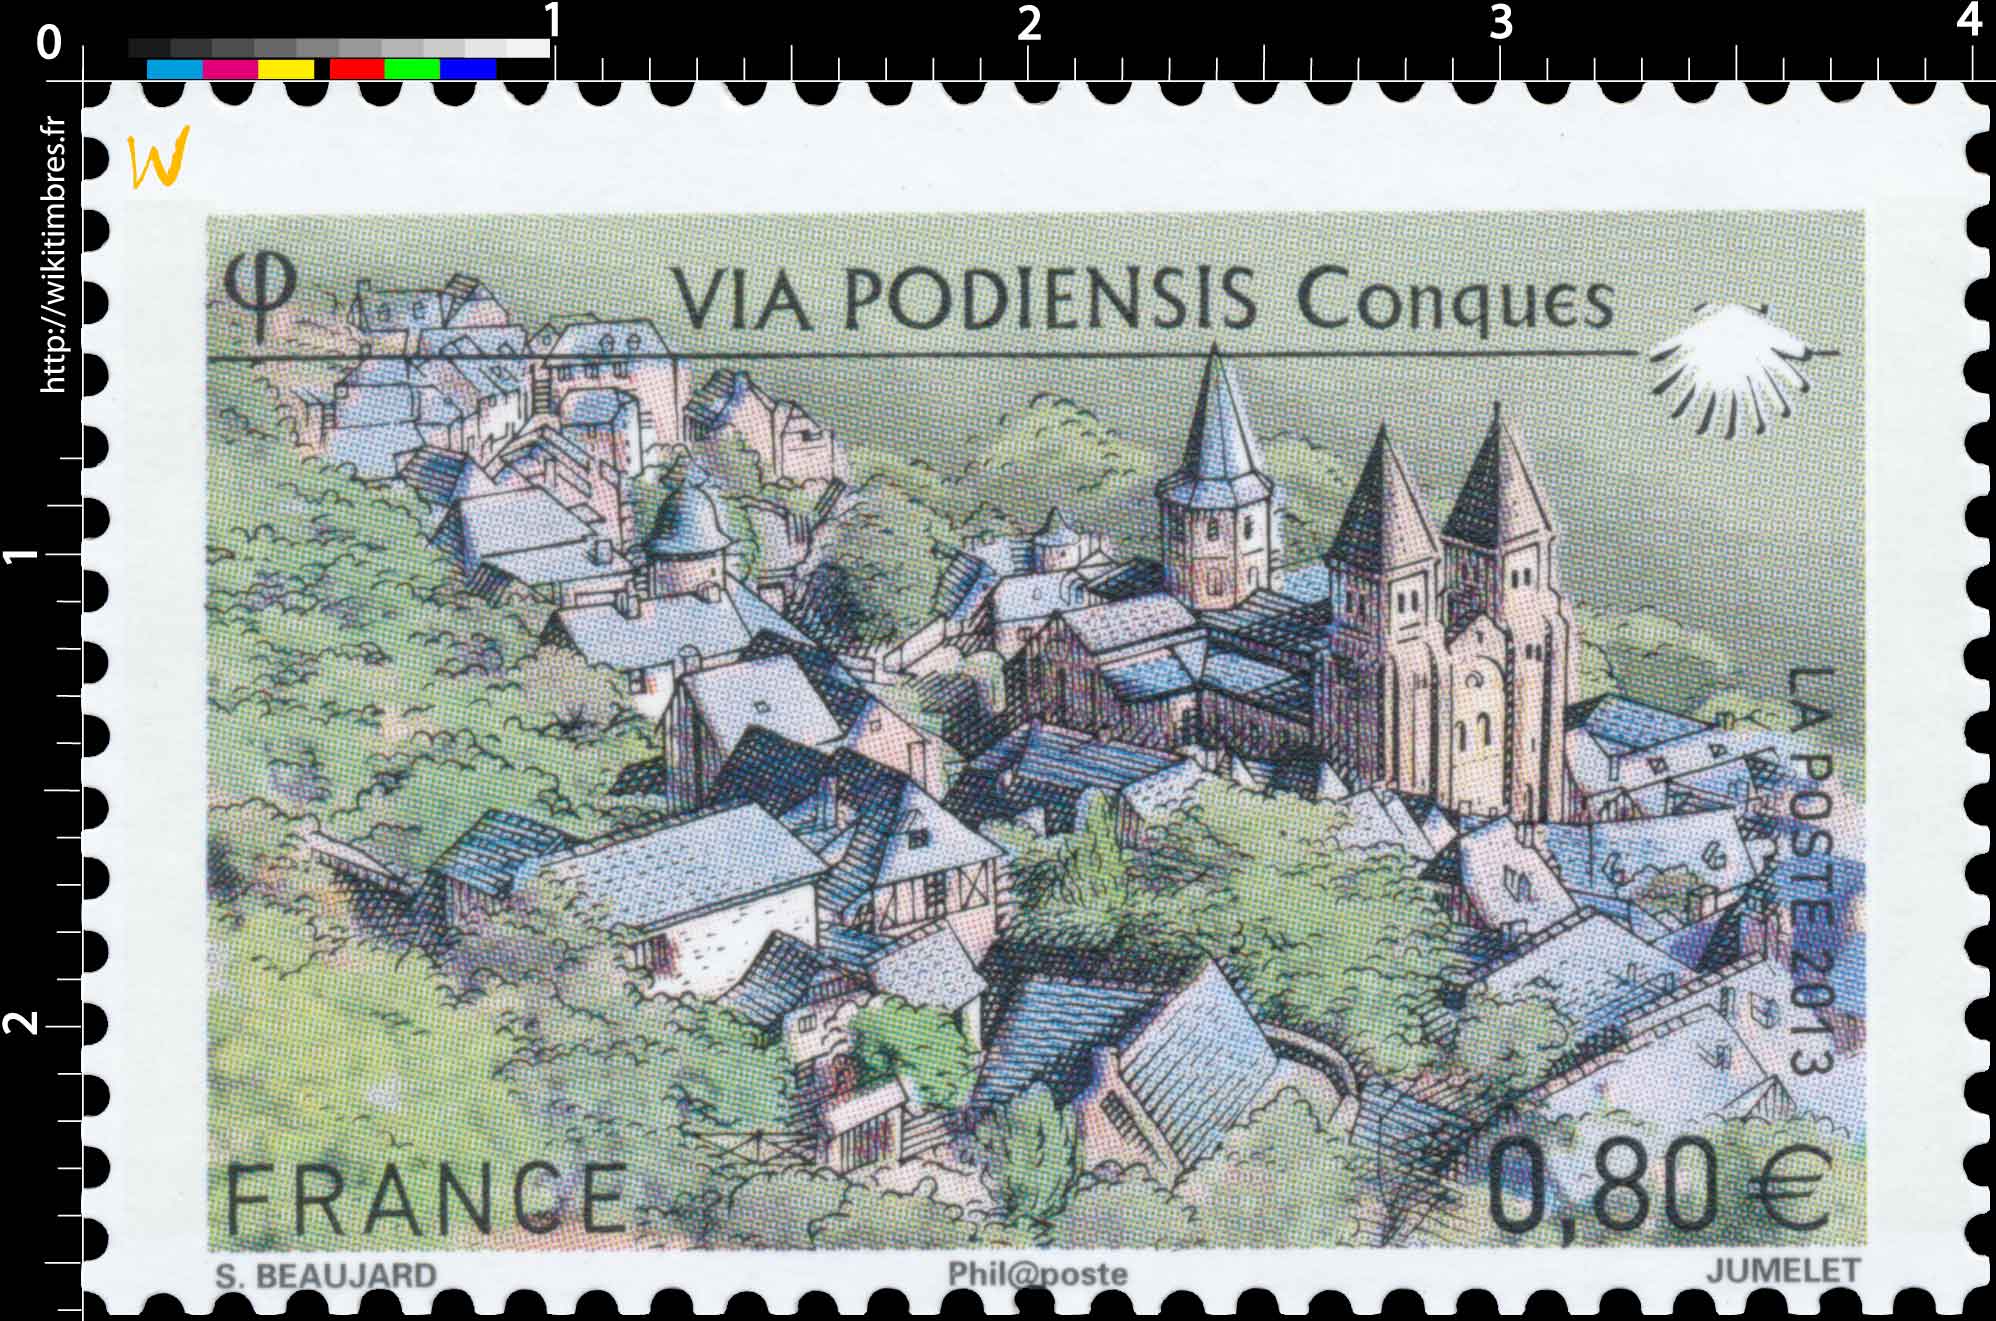 2013 Via Podiensis Conques